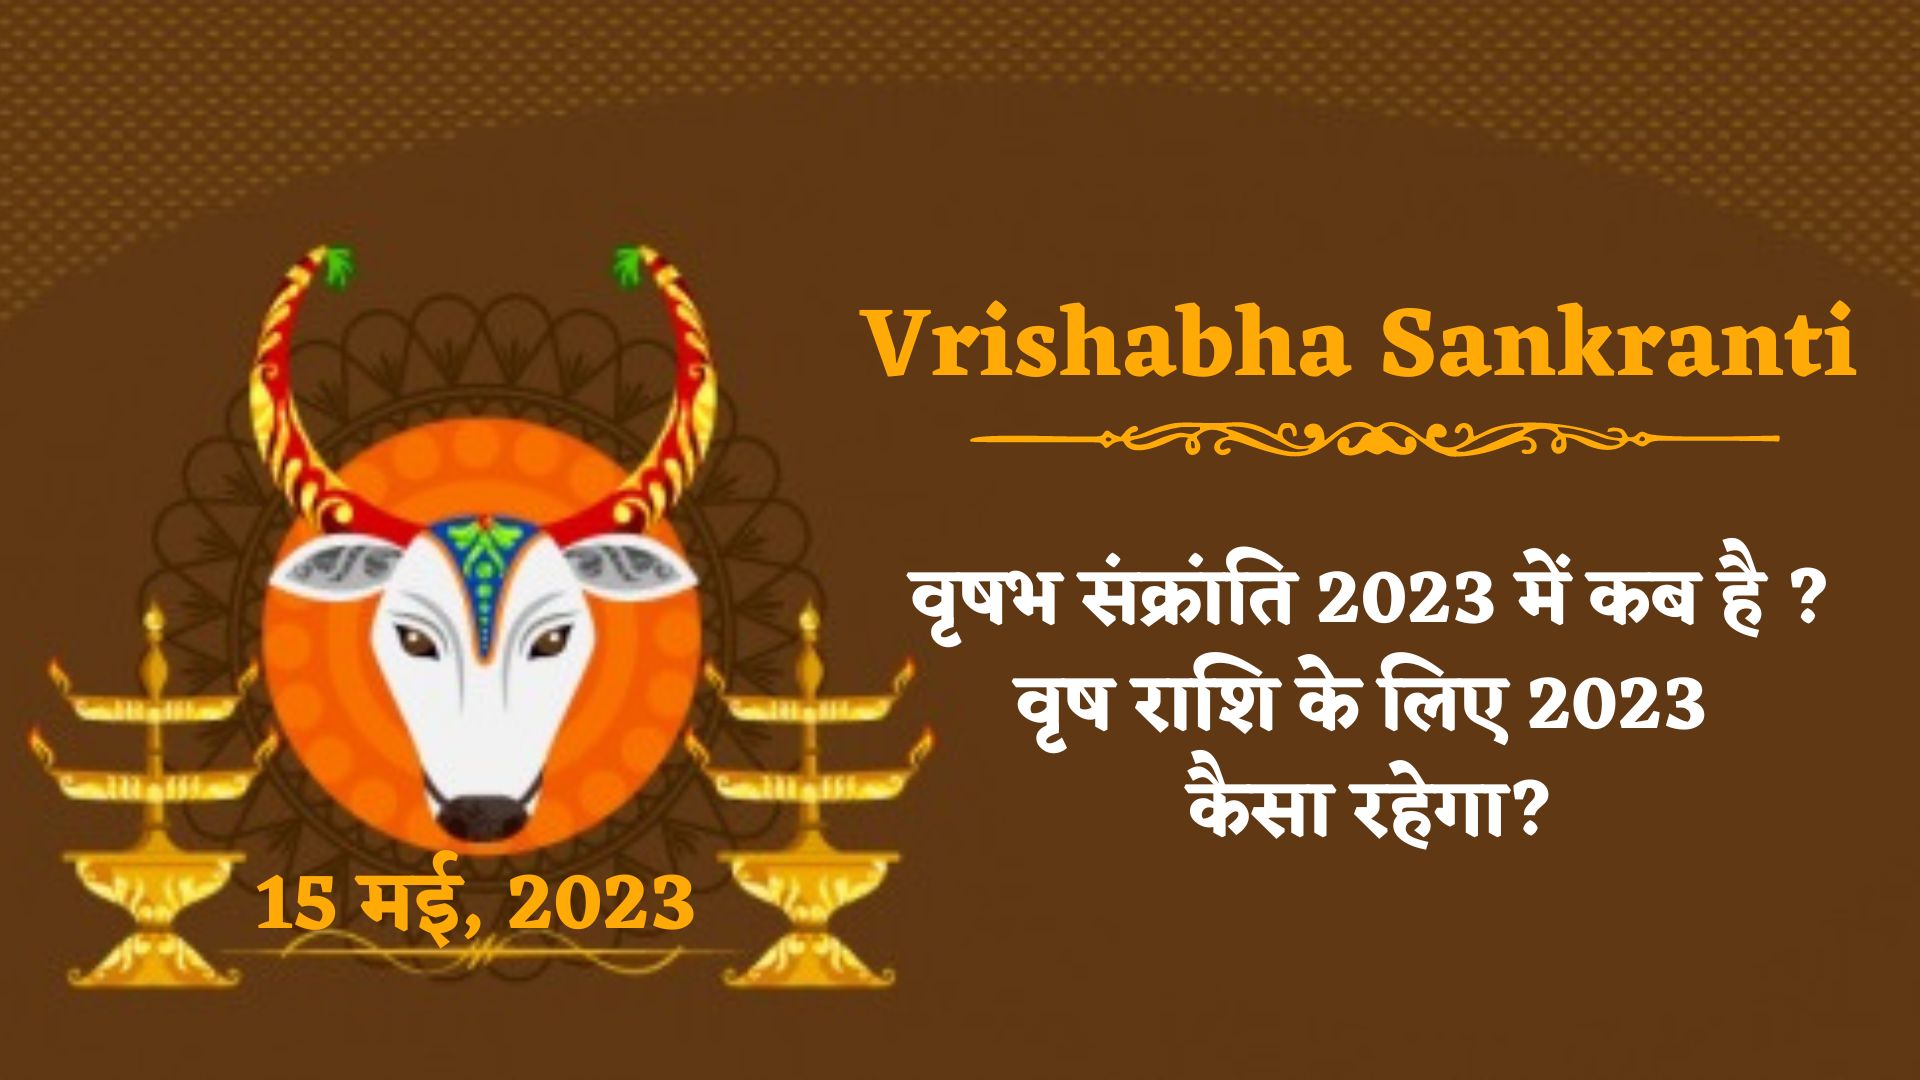 Vrishabha Sankranti 2023